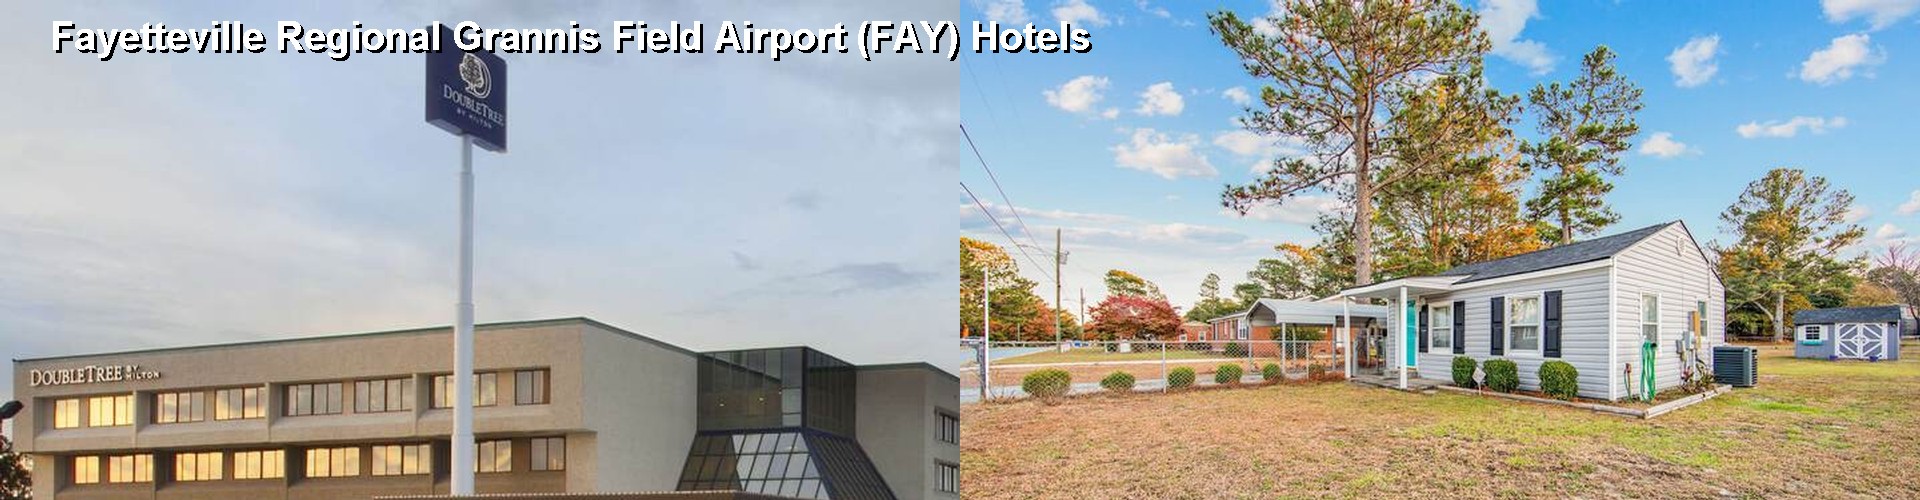 5 Best Hotels near Fayetteville Regional Grannis Field Airport (FAY)